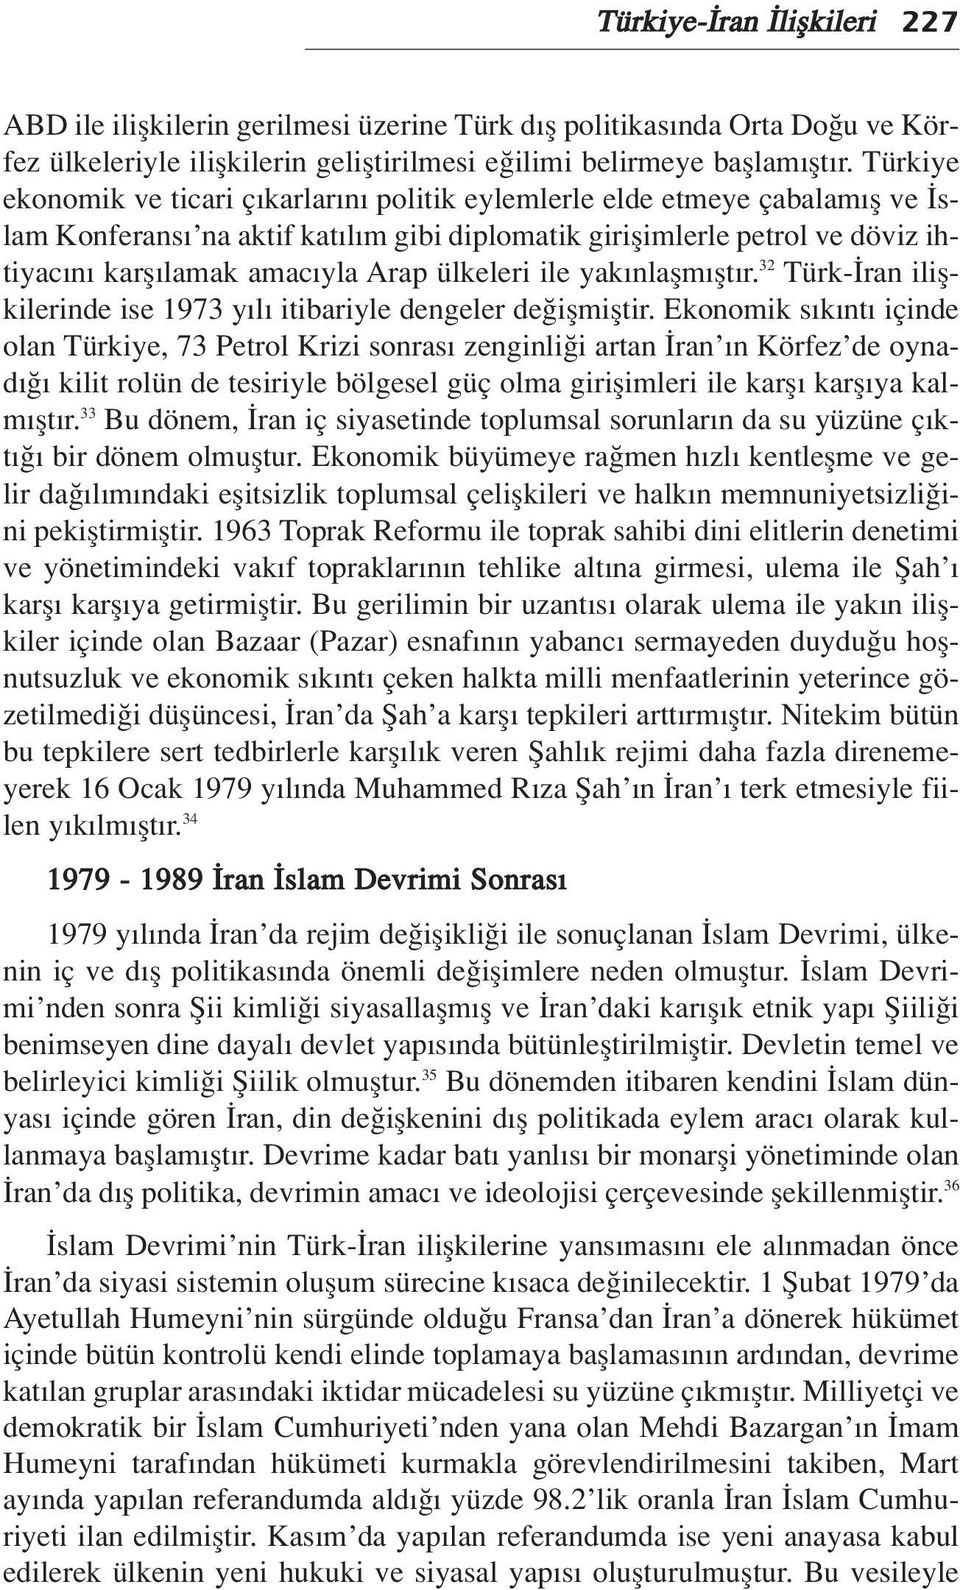 ülkeleri ile yak nlaflm flt r. 32 Türk- ran iliflkilerinde ise 1973 y l itibariyle dengeler de iflmifltir.